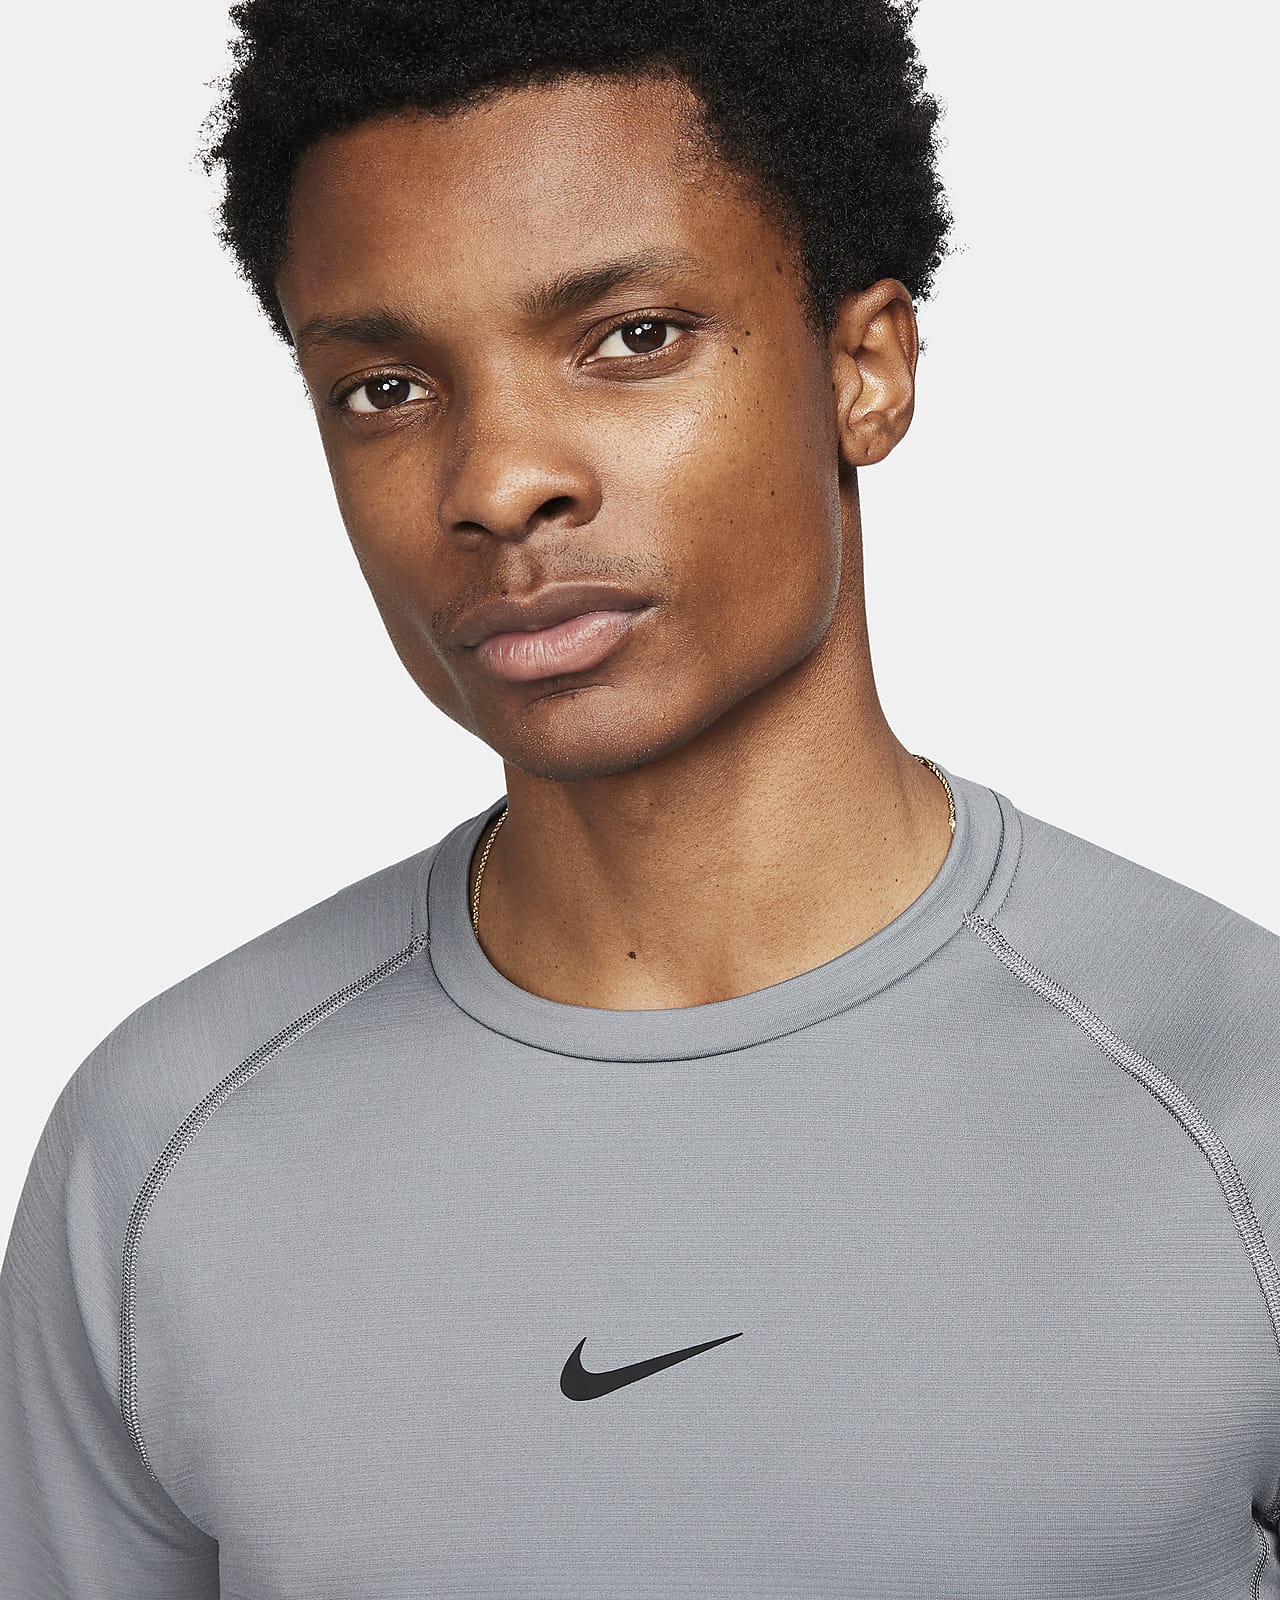 Haut à manches longues Nike Pro Warm pour homme